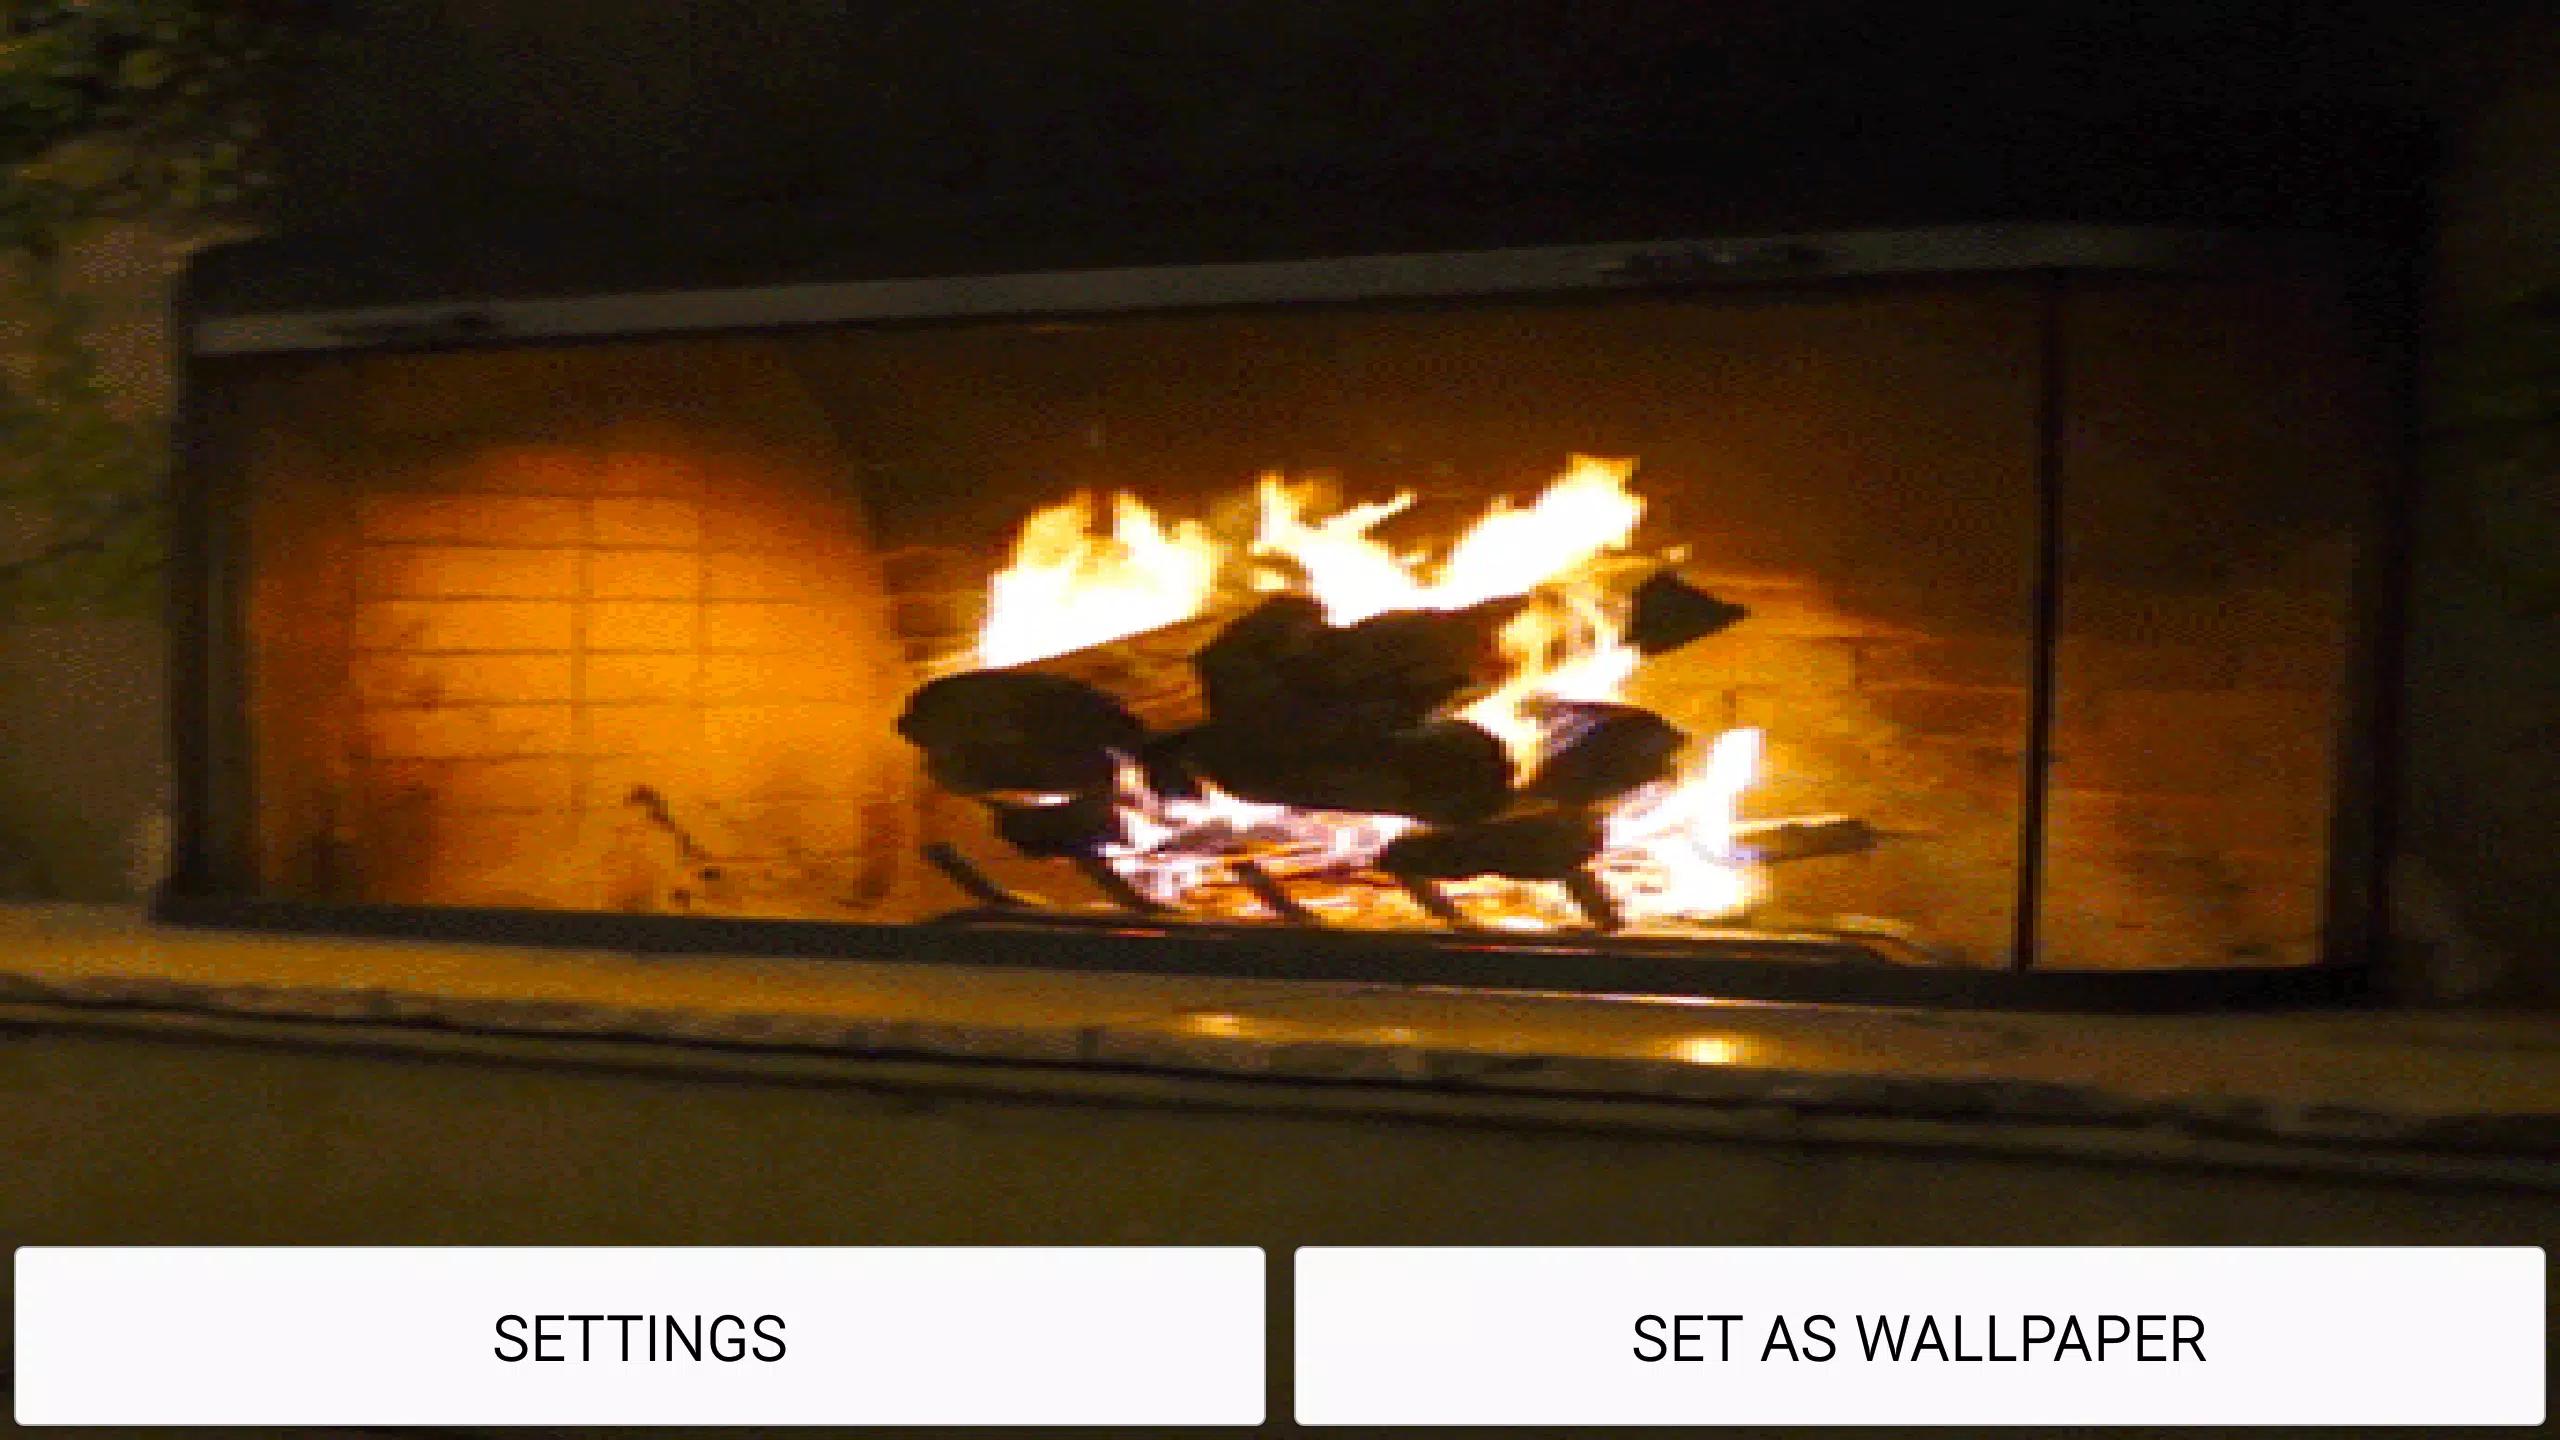 Android 用の 暖炉音 ライブ壁紙 Apk をダウンロード